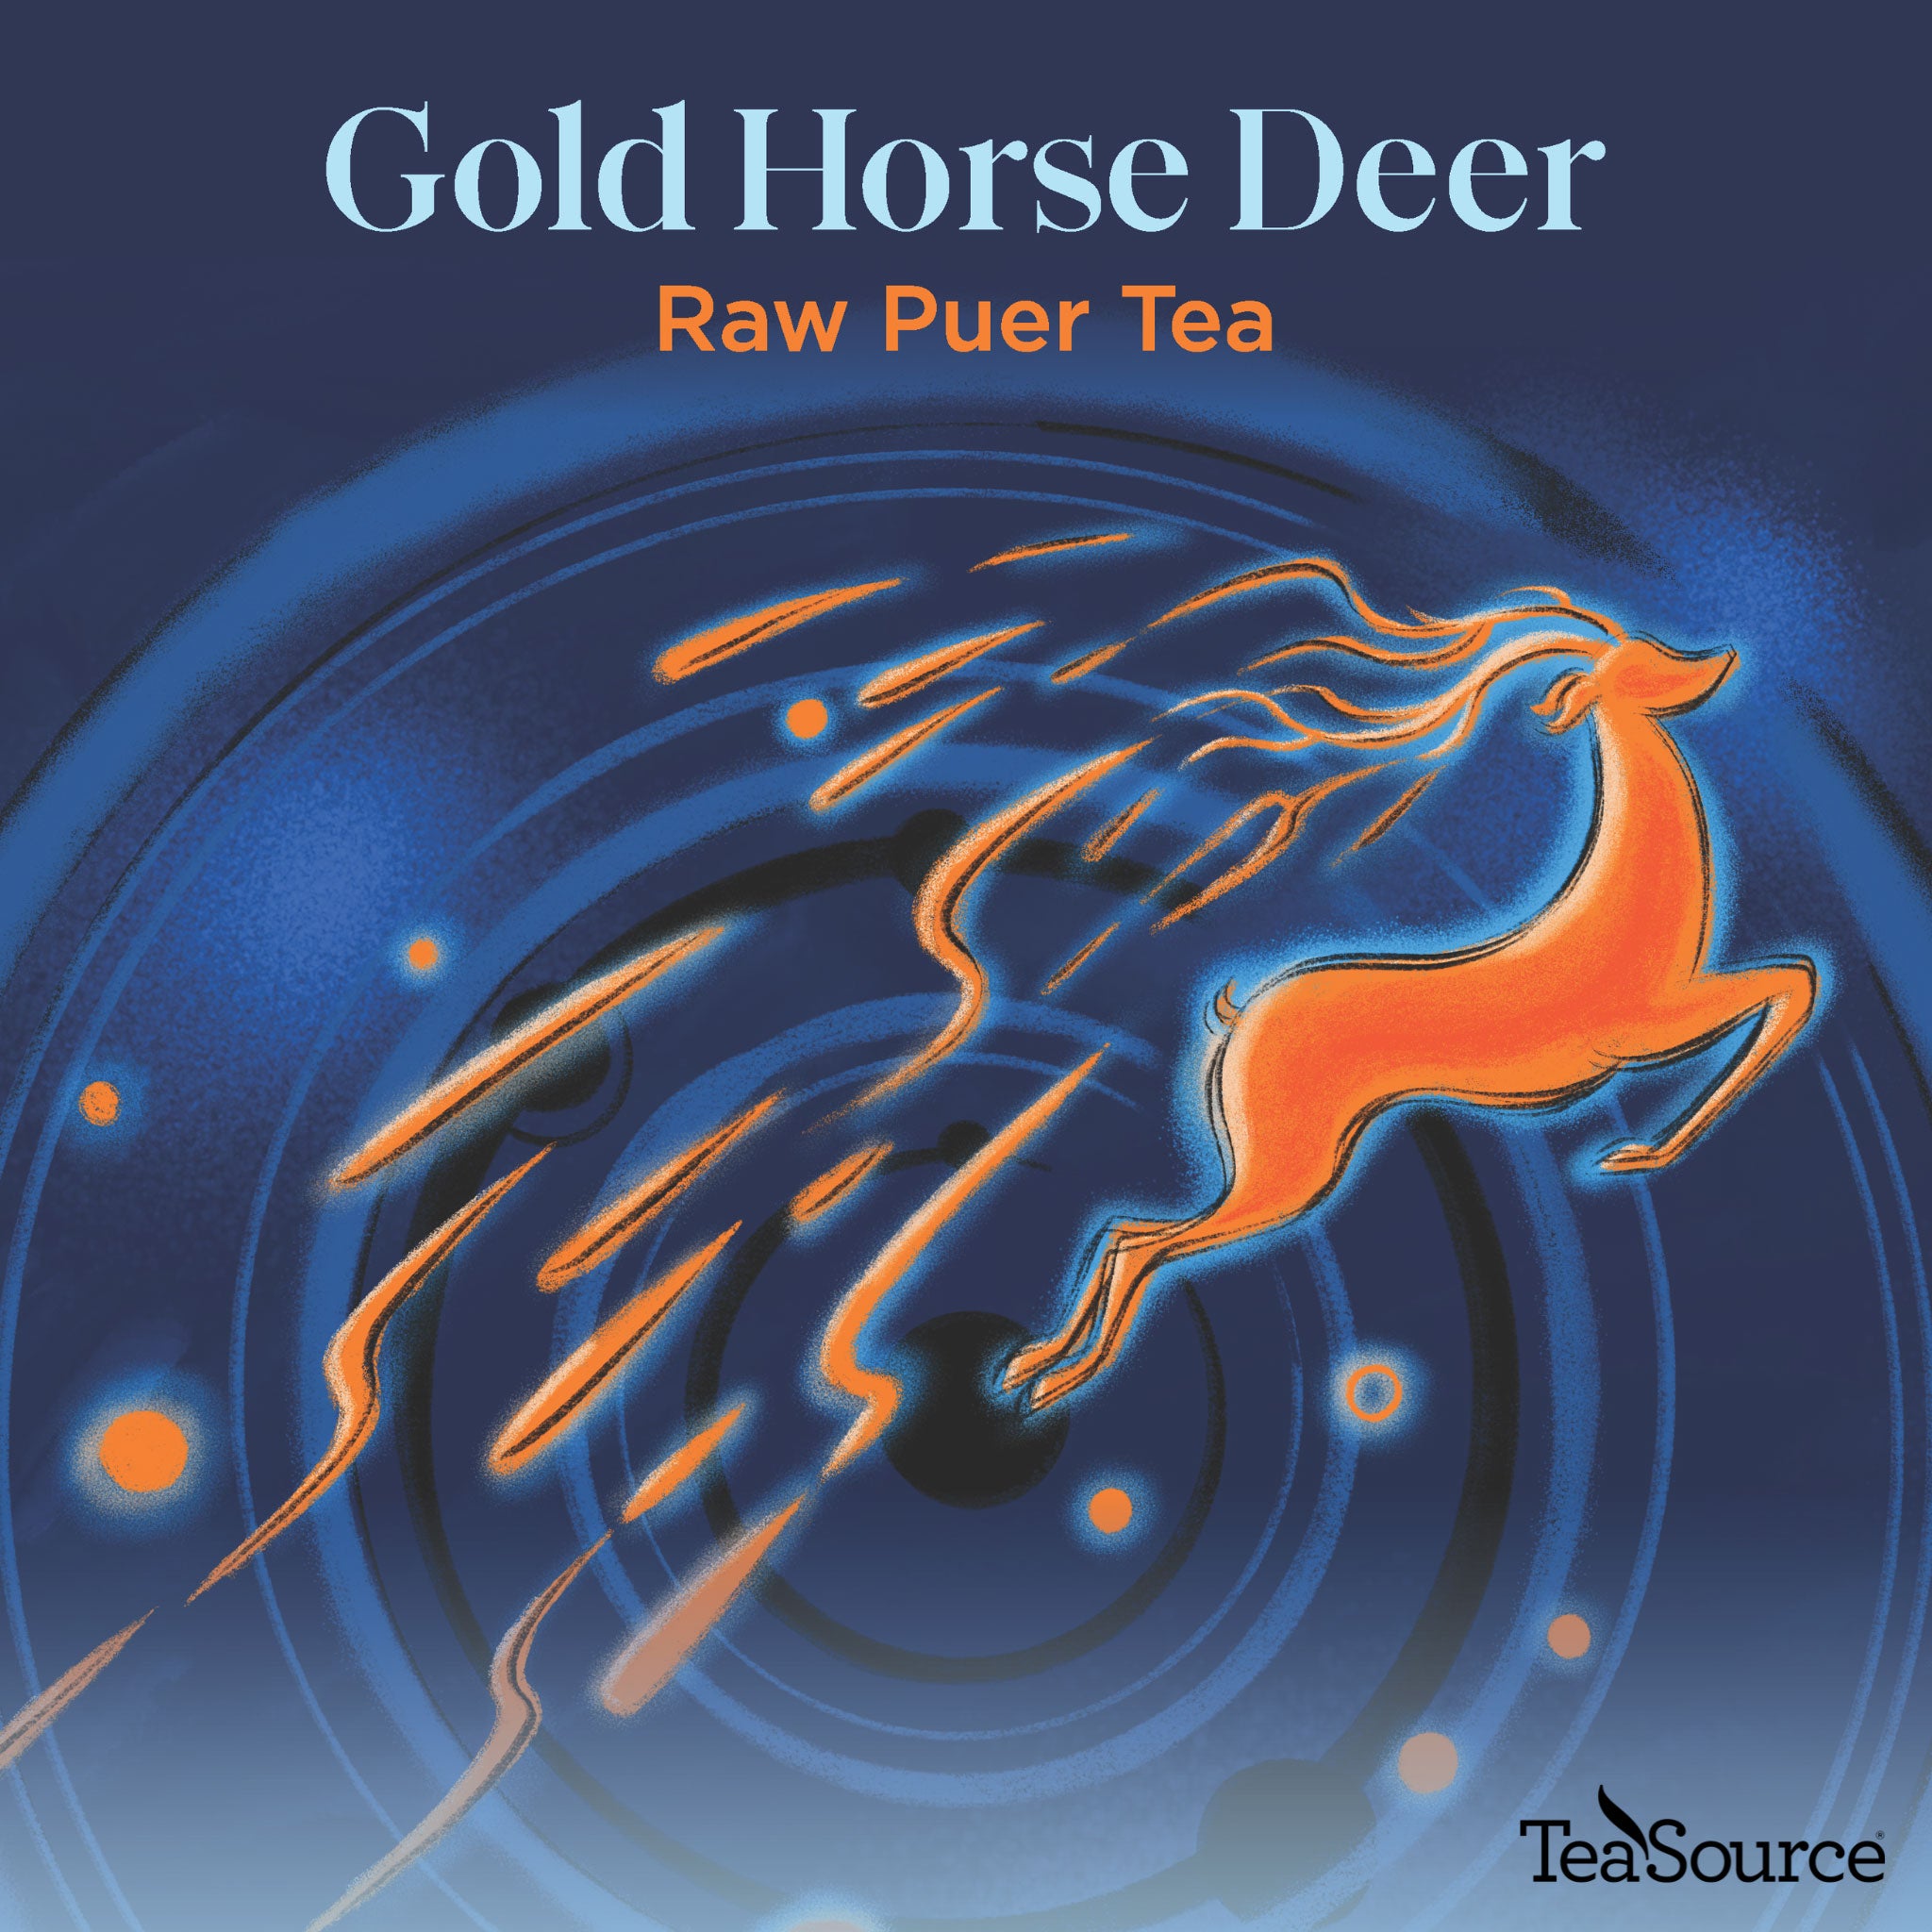 Gold Horse Deer raw puer tea artwork